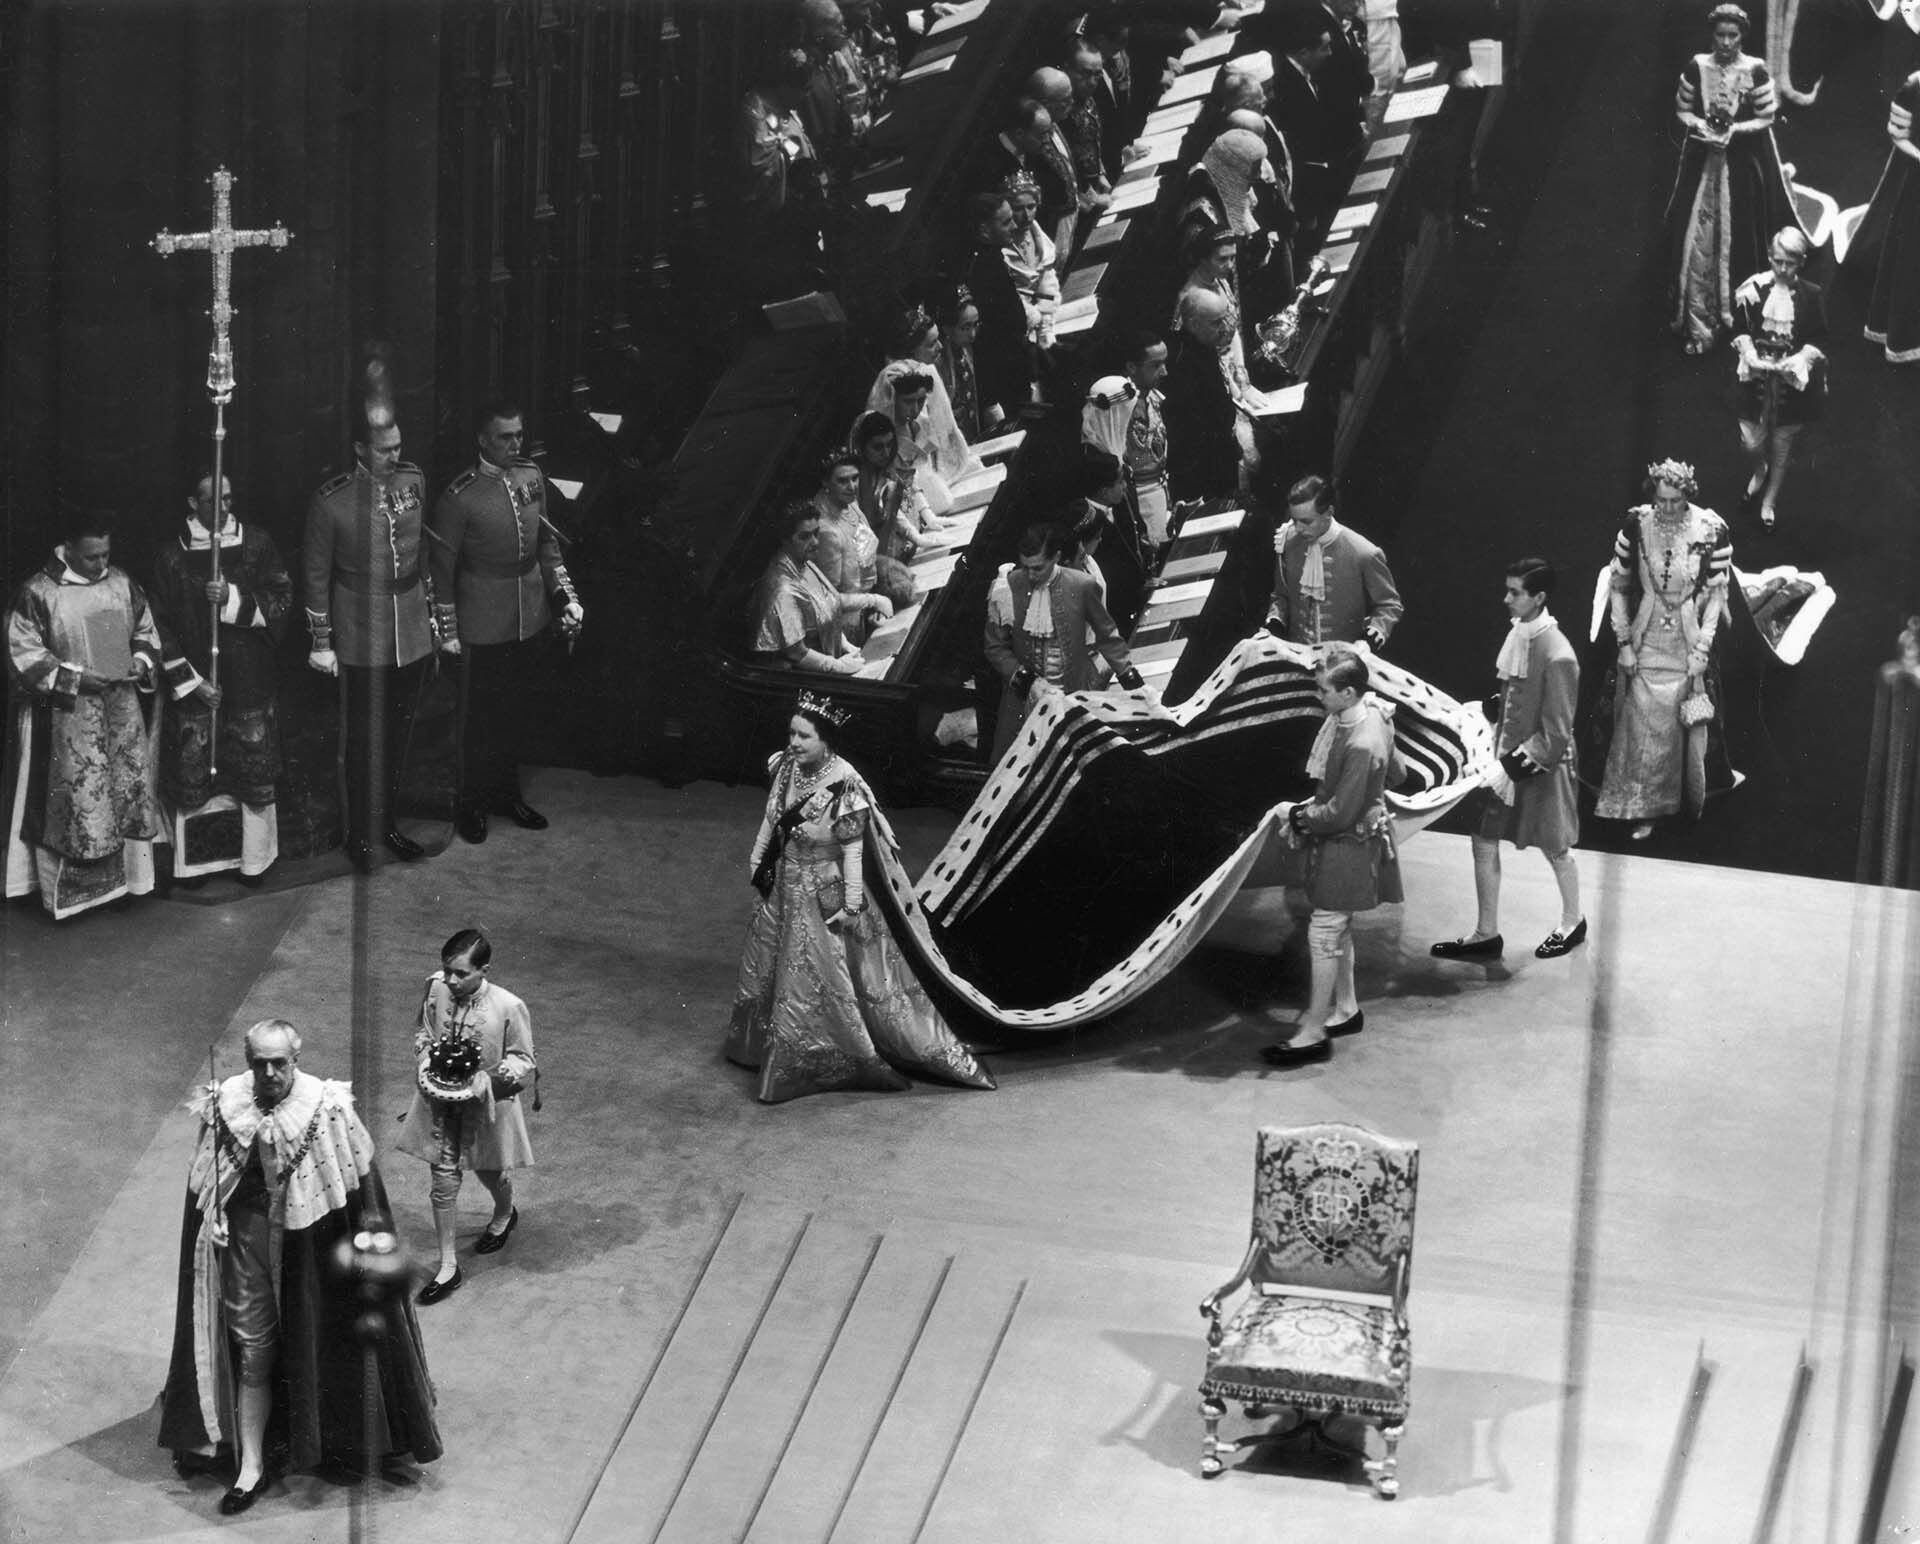 El 2 de junio de 1953, Isabel II fue coronada reina del Reino Unido de Gran Bretaña e Irlanda del Norte en la antigua abadía de Westminster. A la ceremonia asistieron jefes de Estado y representantes de las casas reales europeas (Central Press/Getty Images)